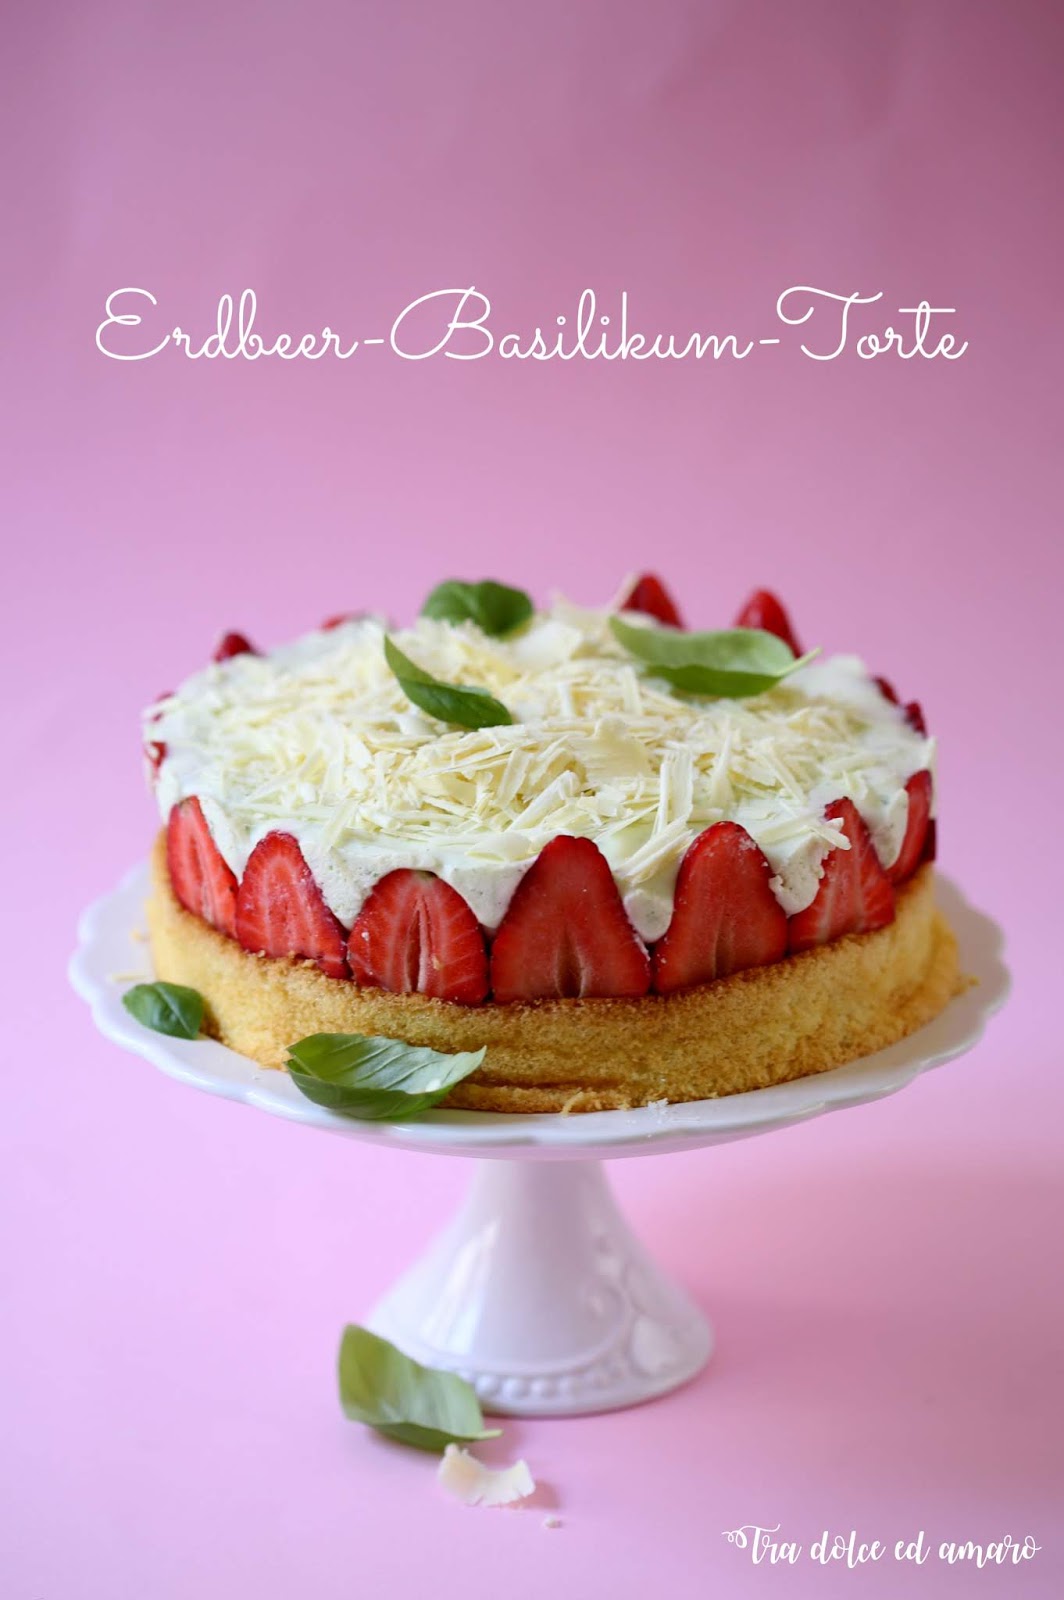 Tra dolce ed amaro: Einfacher als es aussieht: Erdbeer-Basilikum-Torte ...